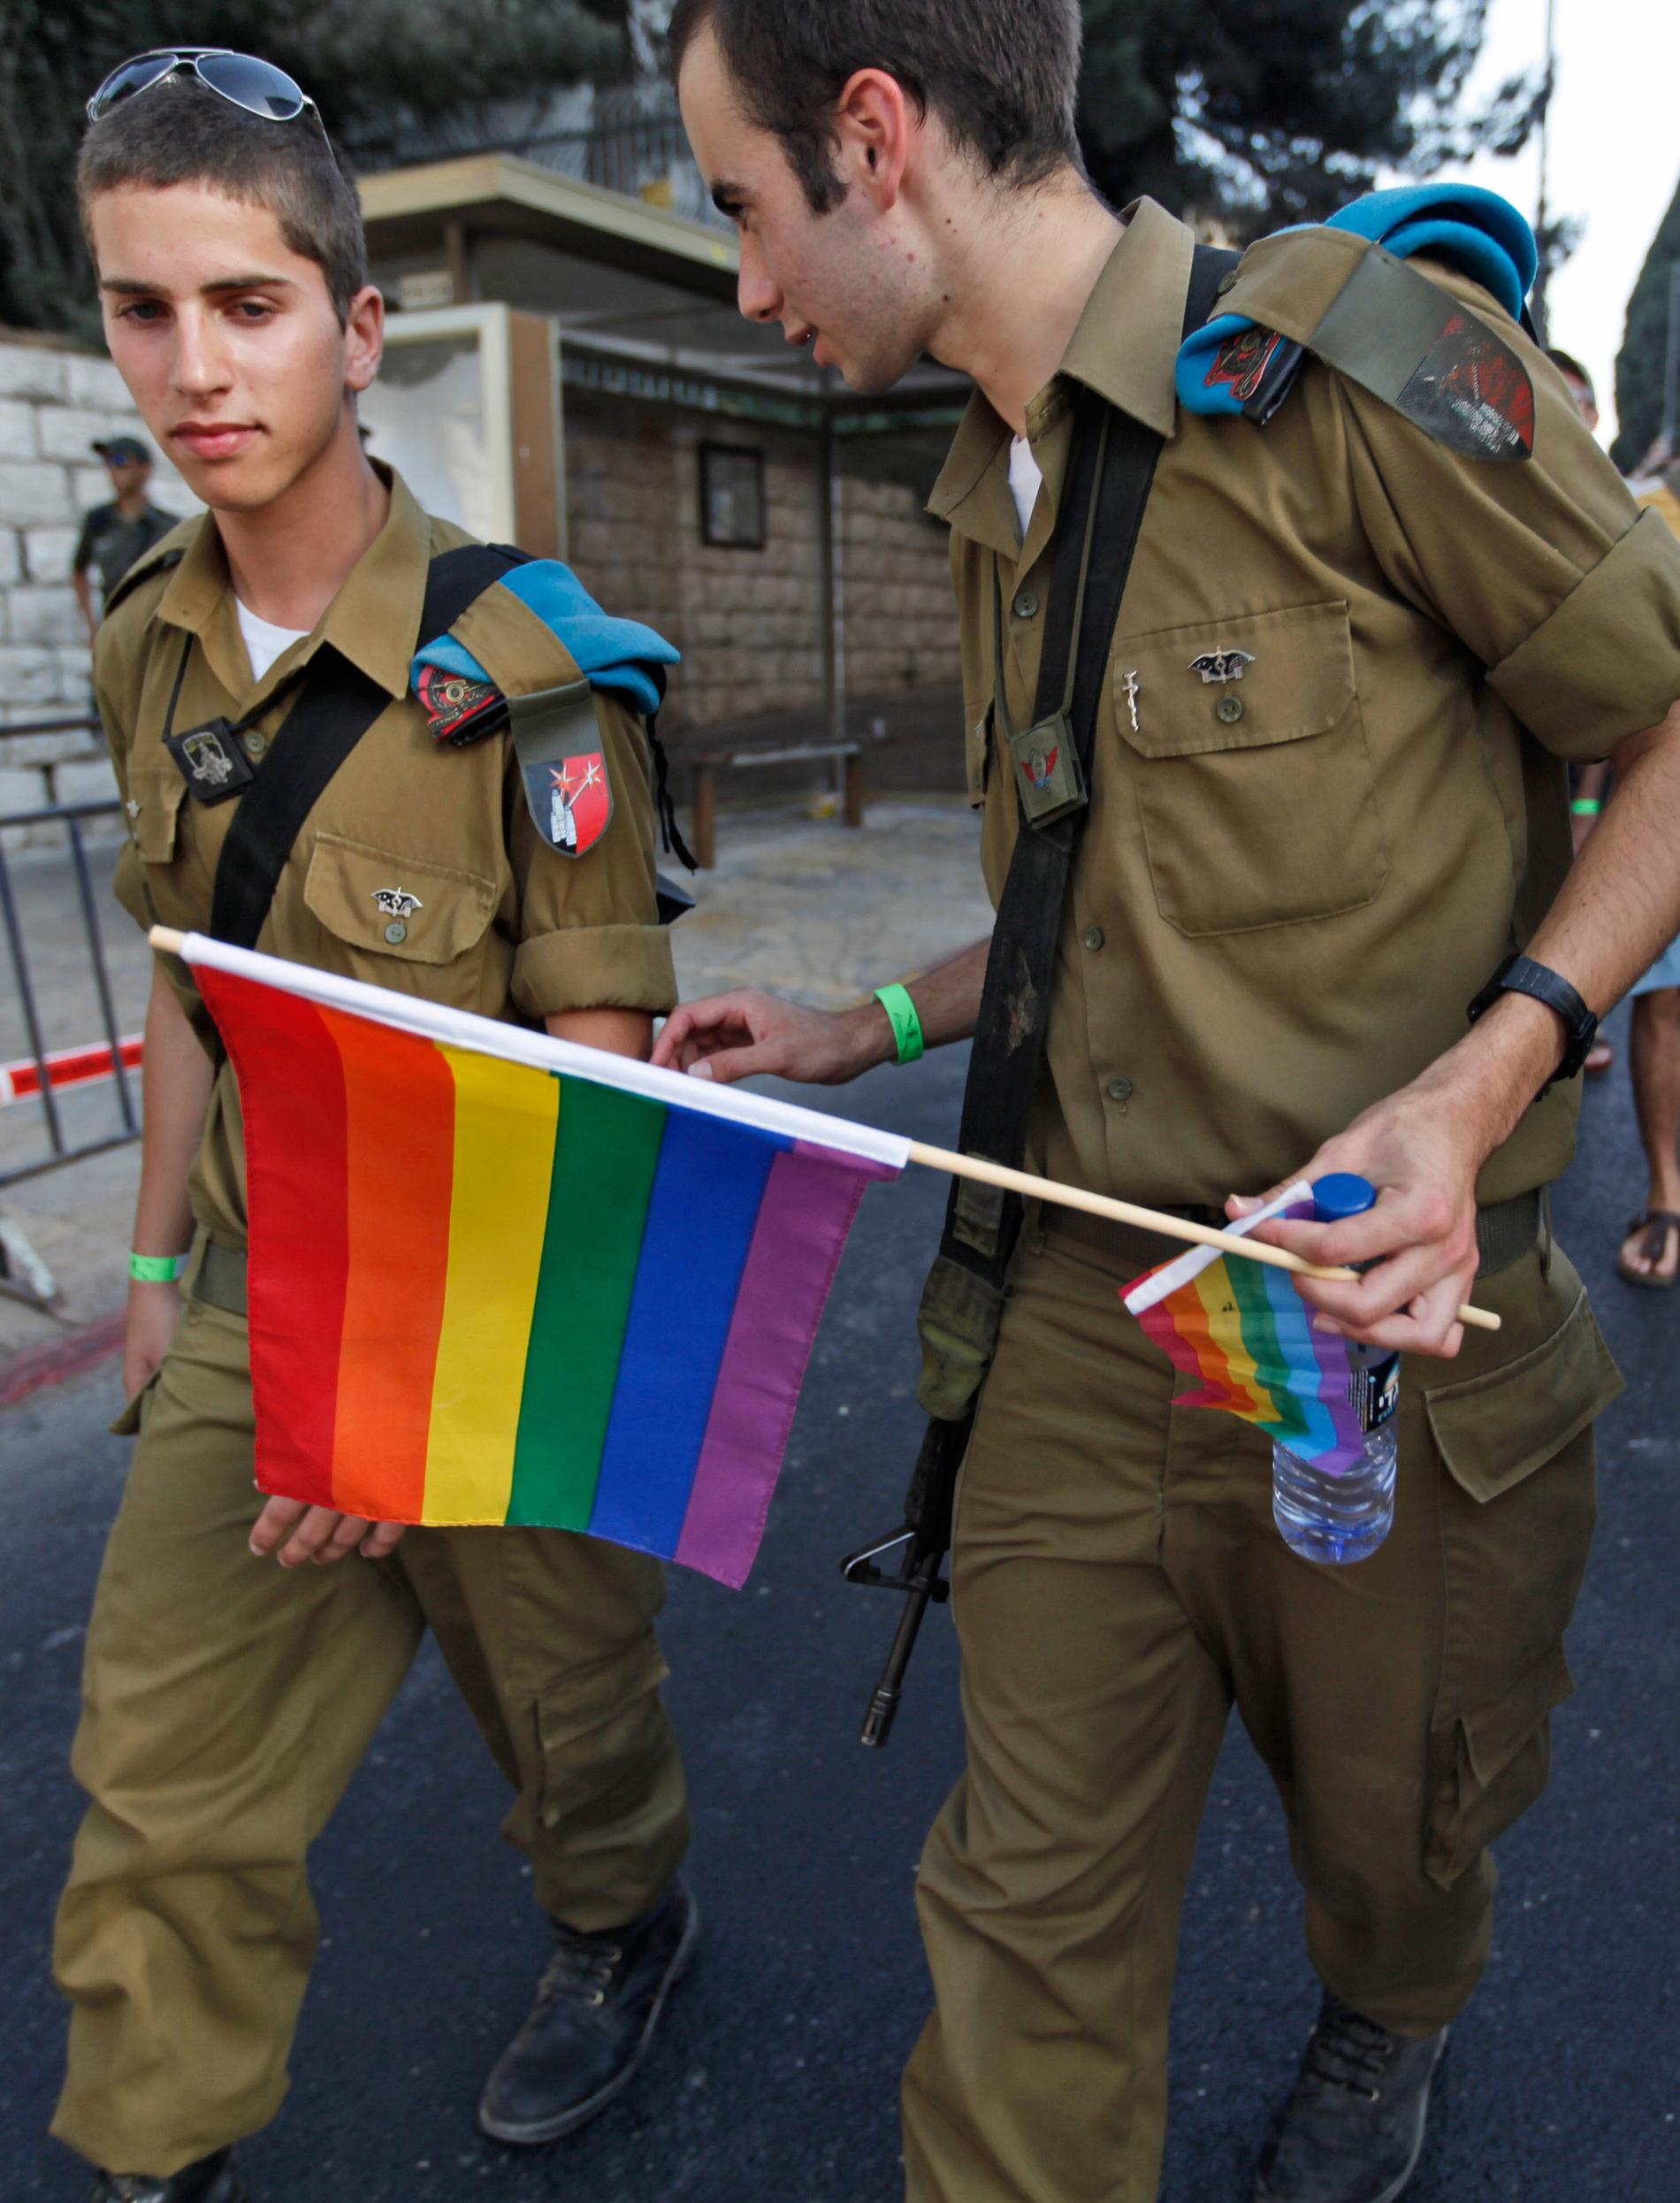 Rosatvätt Israel är förhållandevis gayvänligt och soldater kan, som här, delta i en Prideparad. Samtidigt förvägrar man palestinierna deras rättigheter - med hjälp av samma soldaters gevär. Foto: Tara Todras-Whitehill/AP.